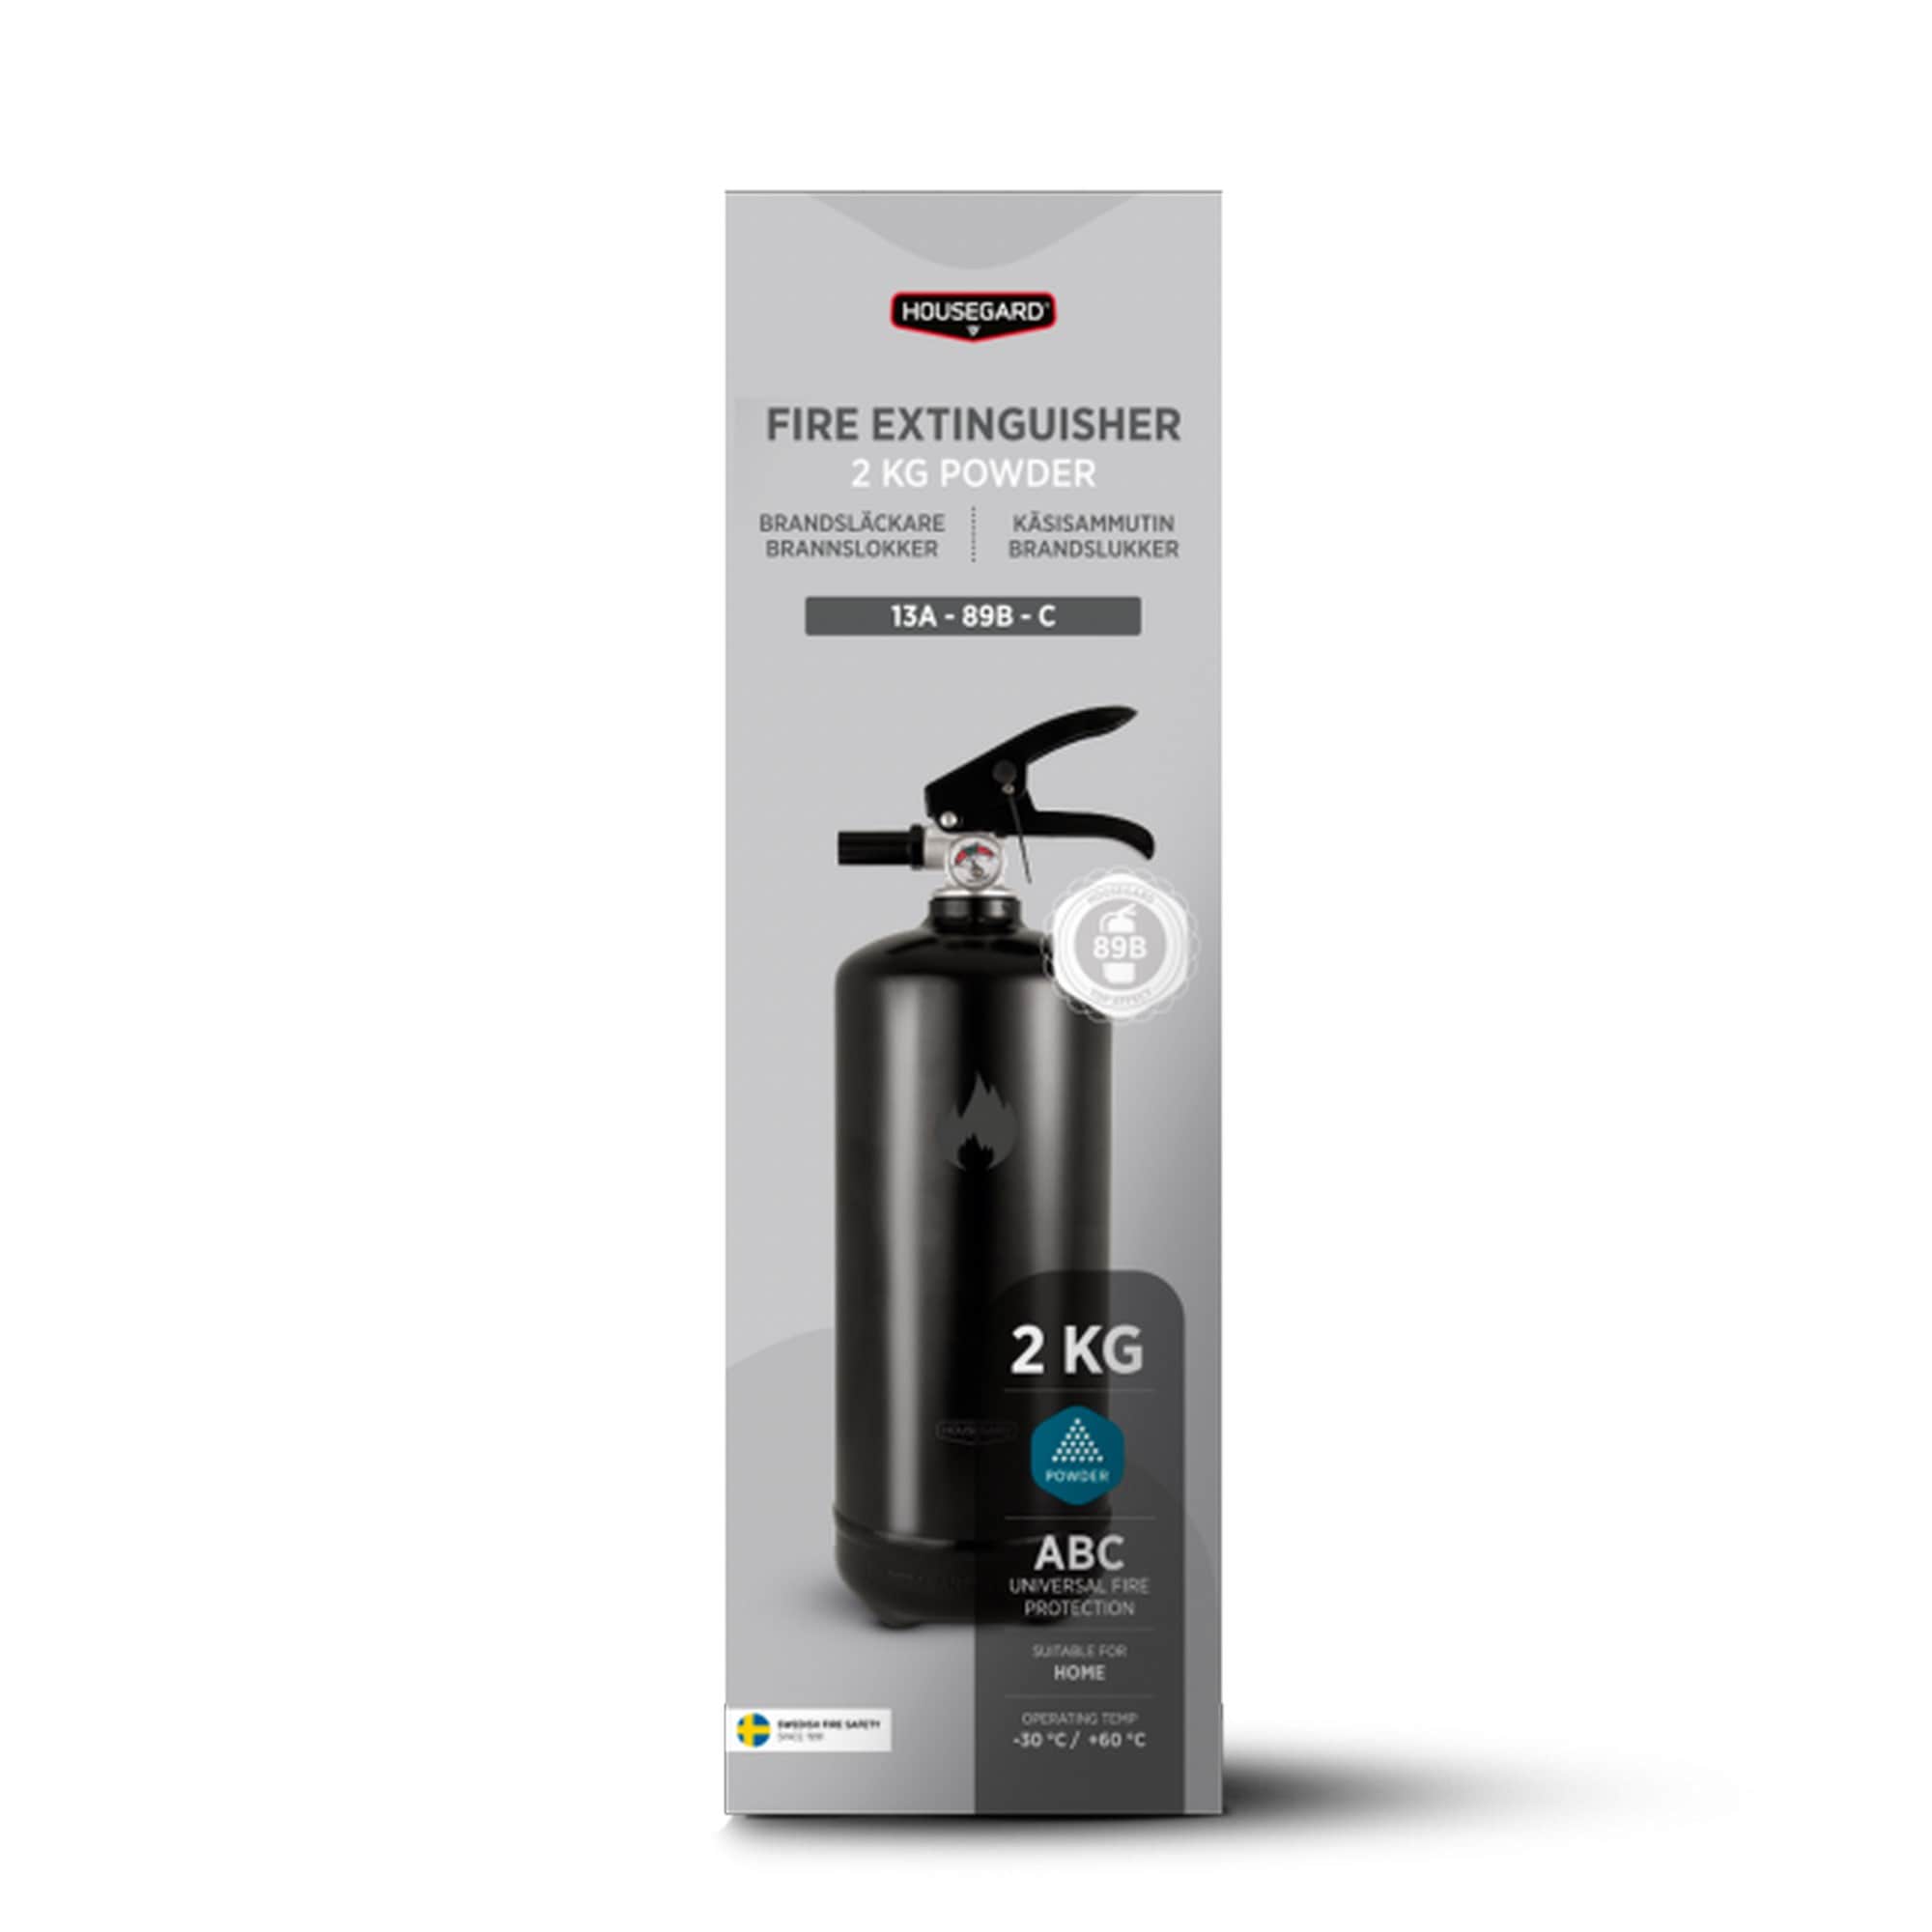 Fire extinguisher Design by Housegard 2 kg powder